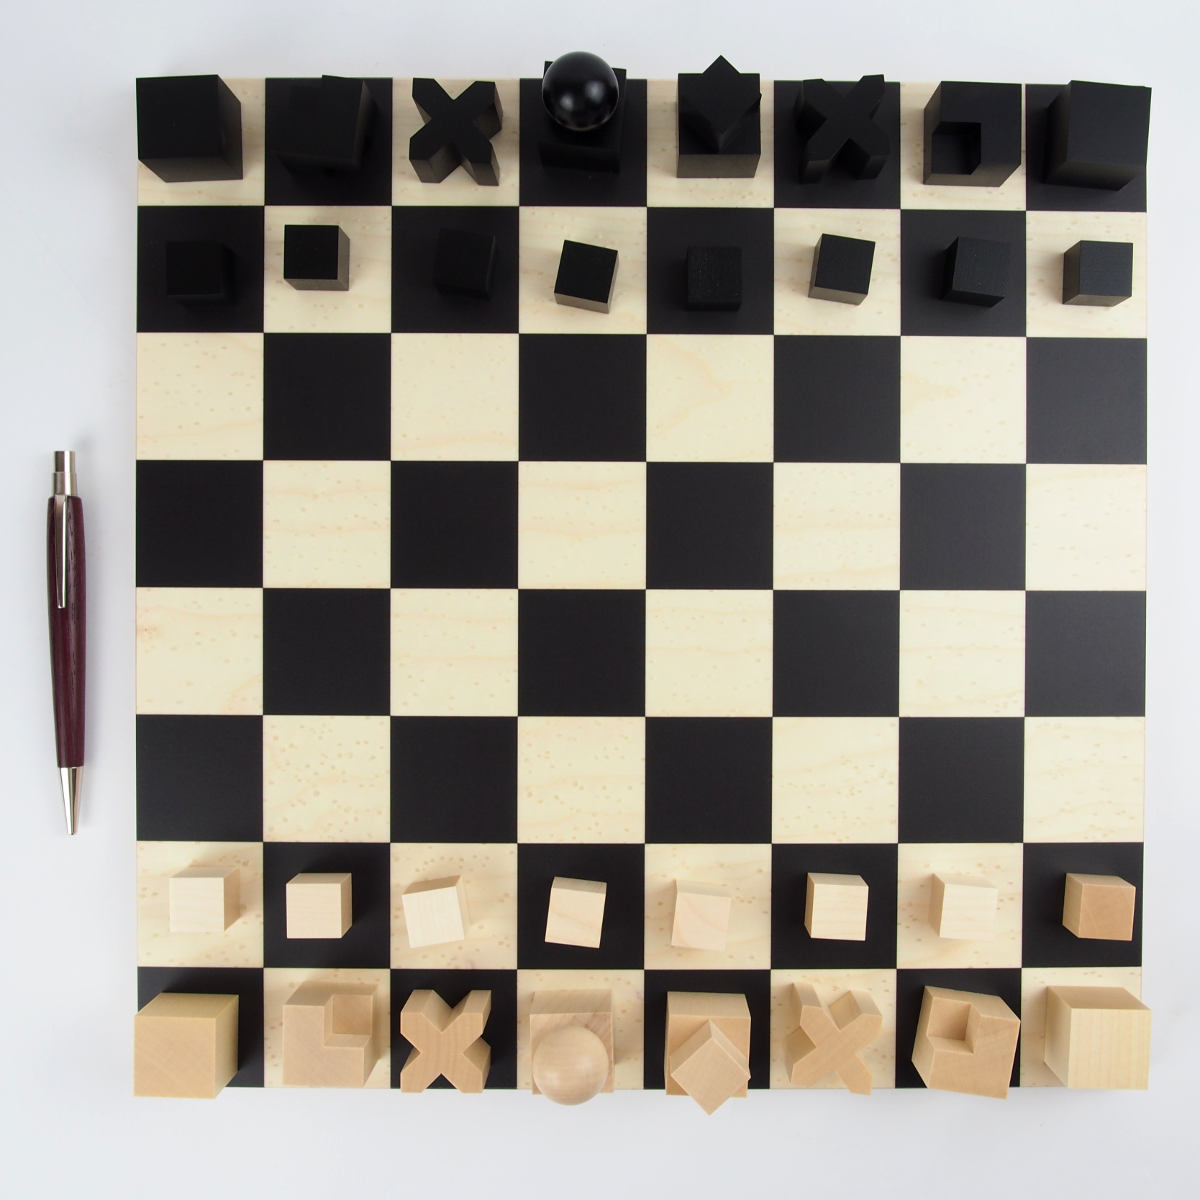 Bauhaus Chess Pieces Handmade Wooden Chess Pieces Set Chess -  Finland